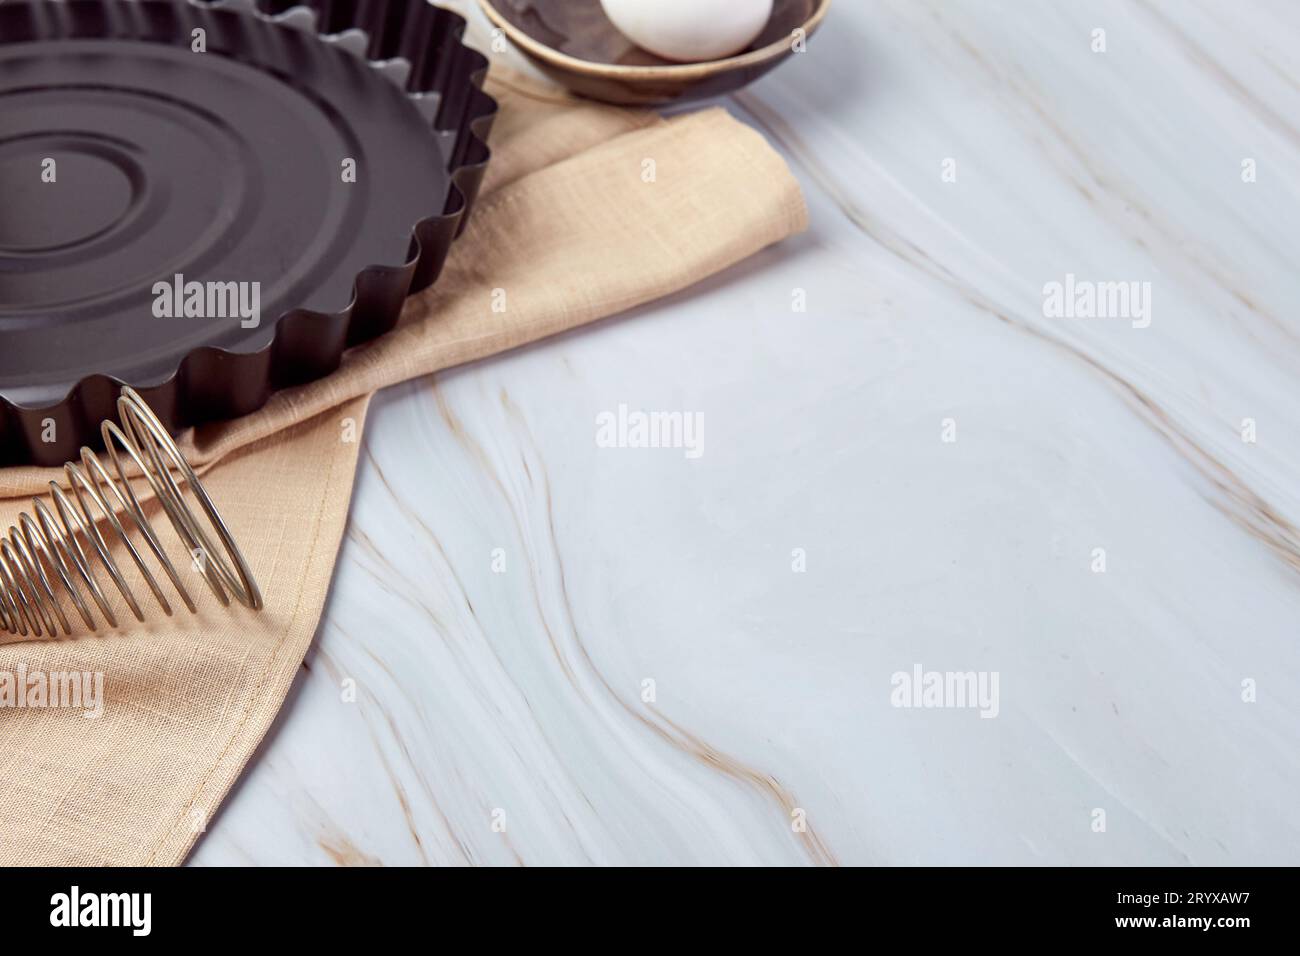 Composizione con utensili da forno e ingredienti da cucina per crostate, biscotti, impasto e pasticceria Foto Stock